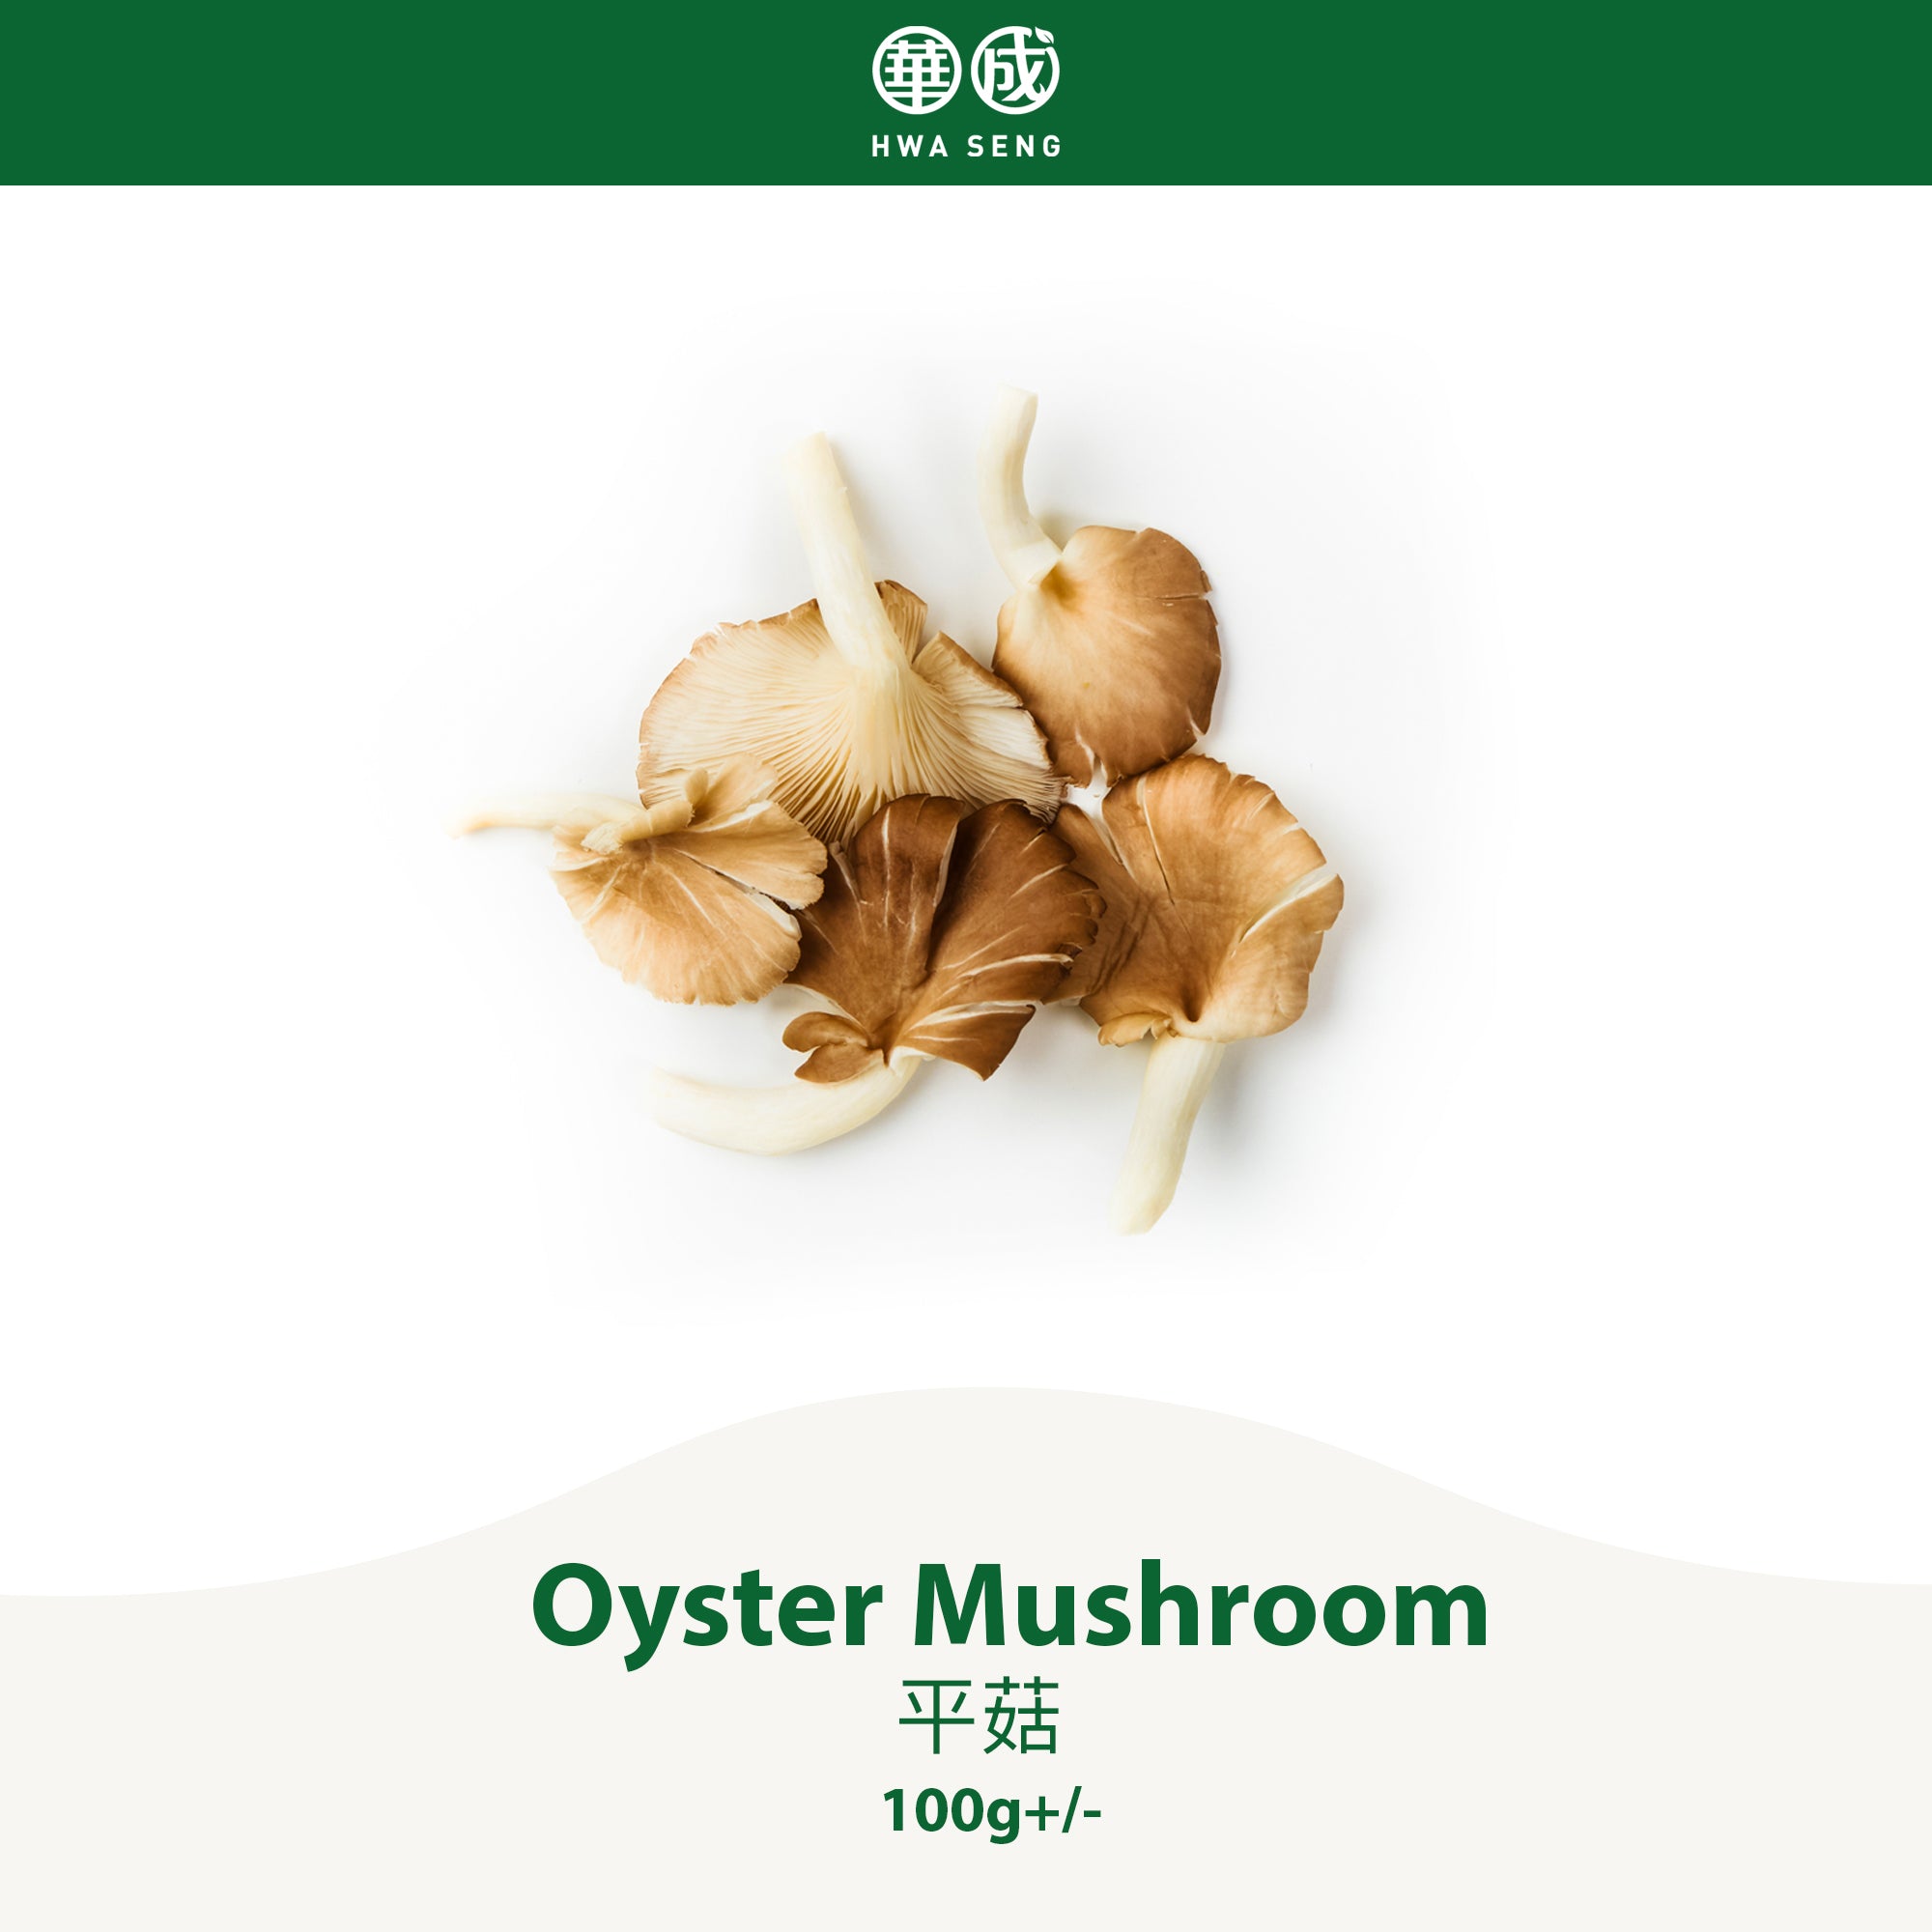 Oyster Mushroom 平菇 100g+/-